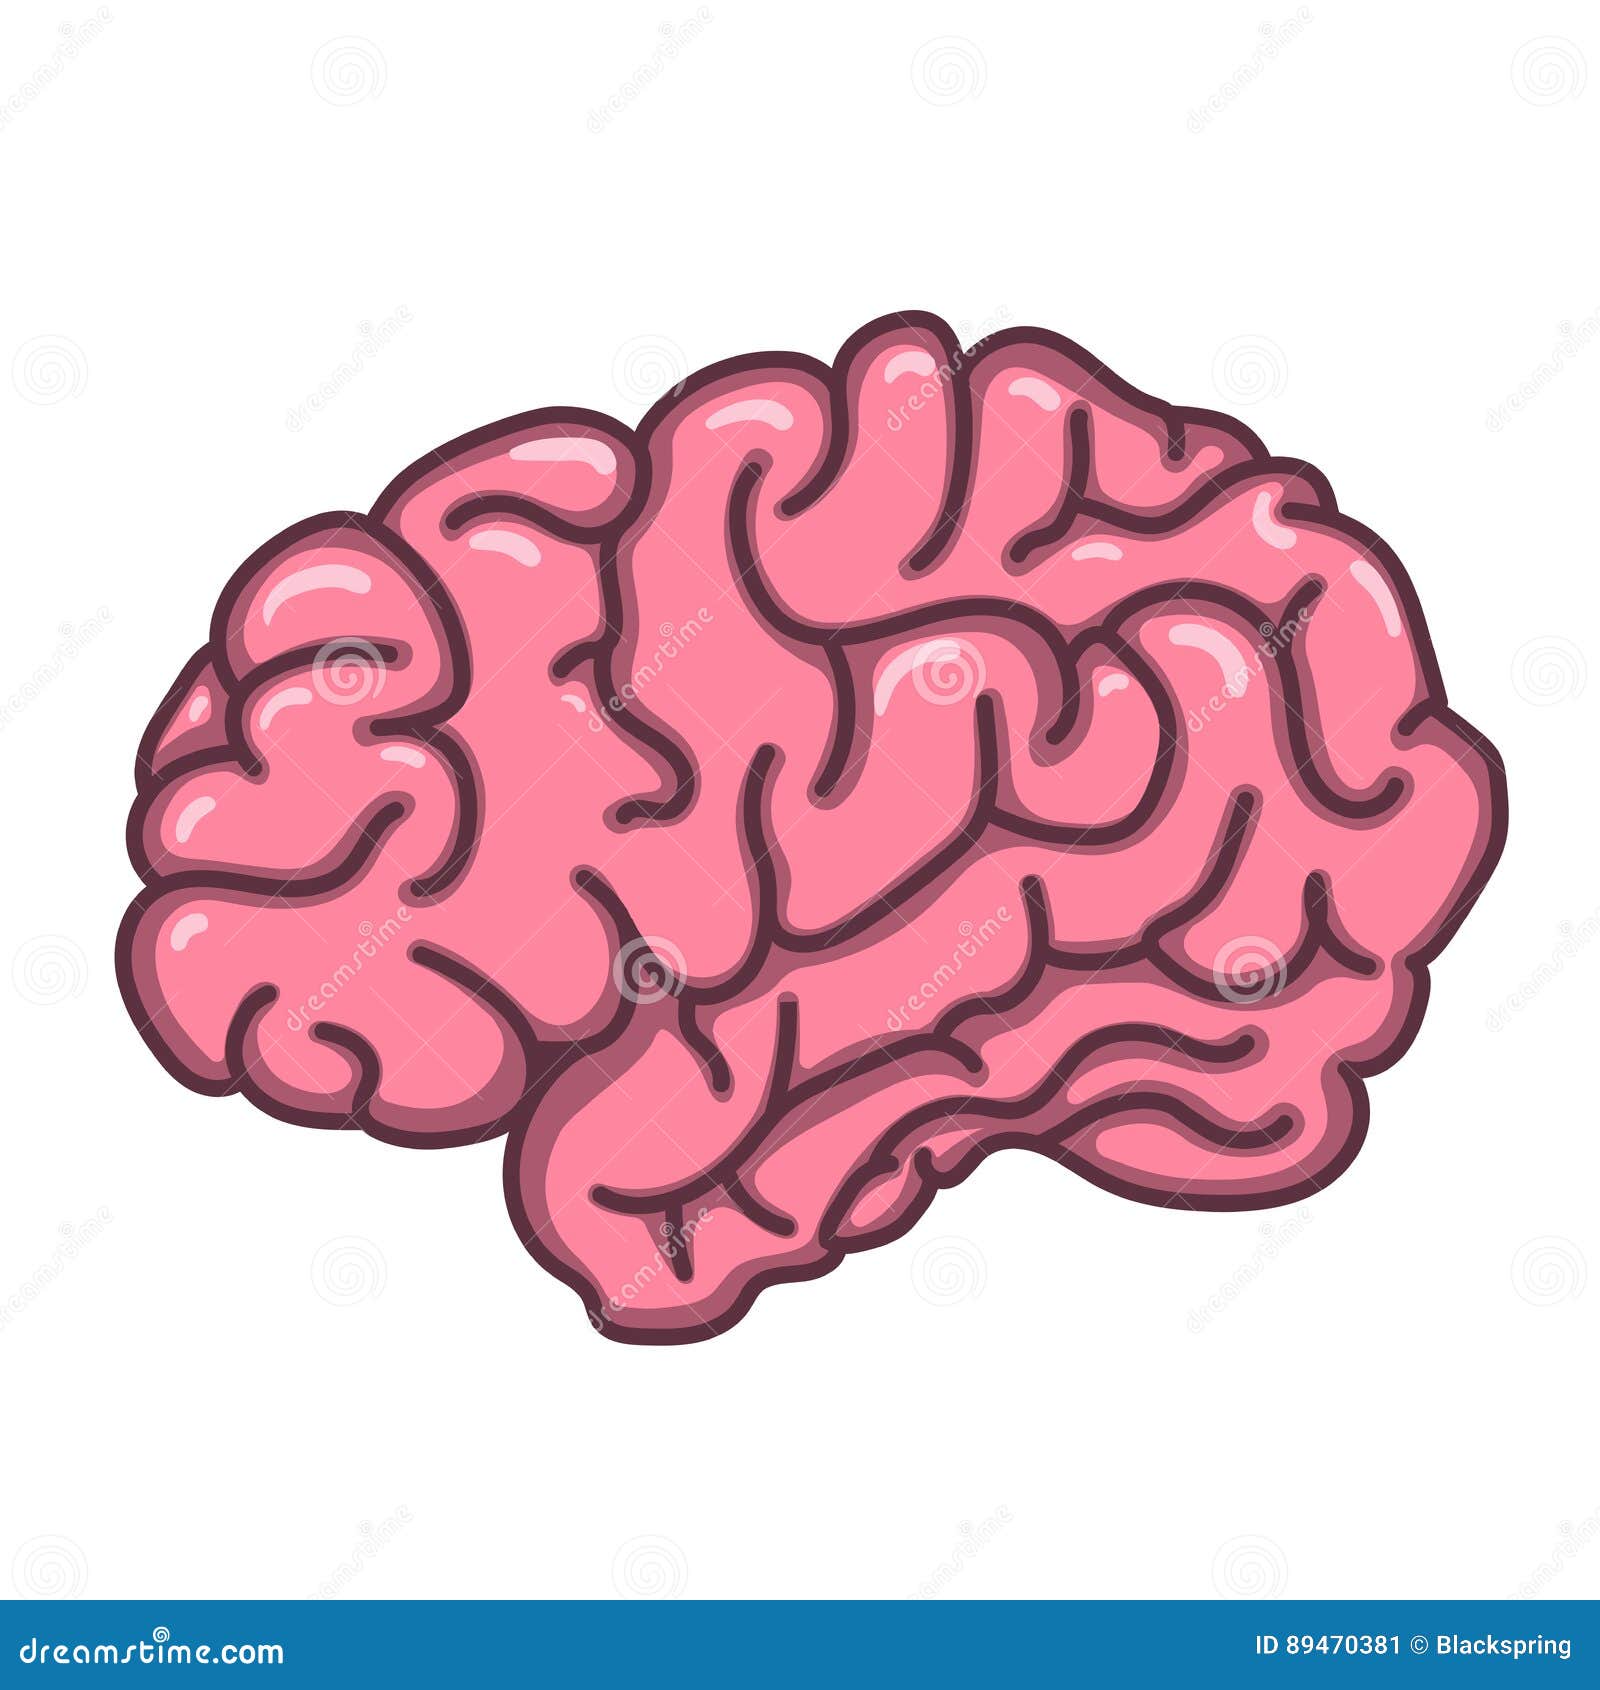 Flat Style Human Brain Illustration Stock Vector - Illustration of ...